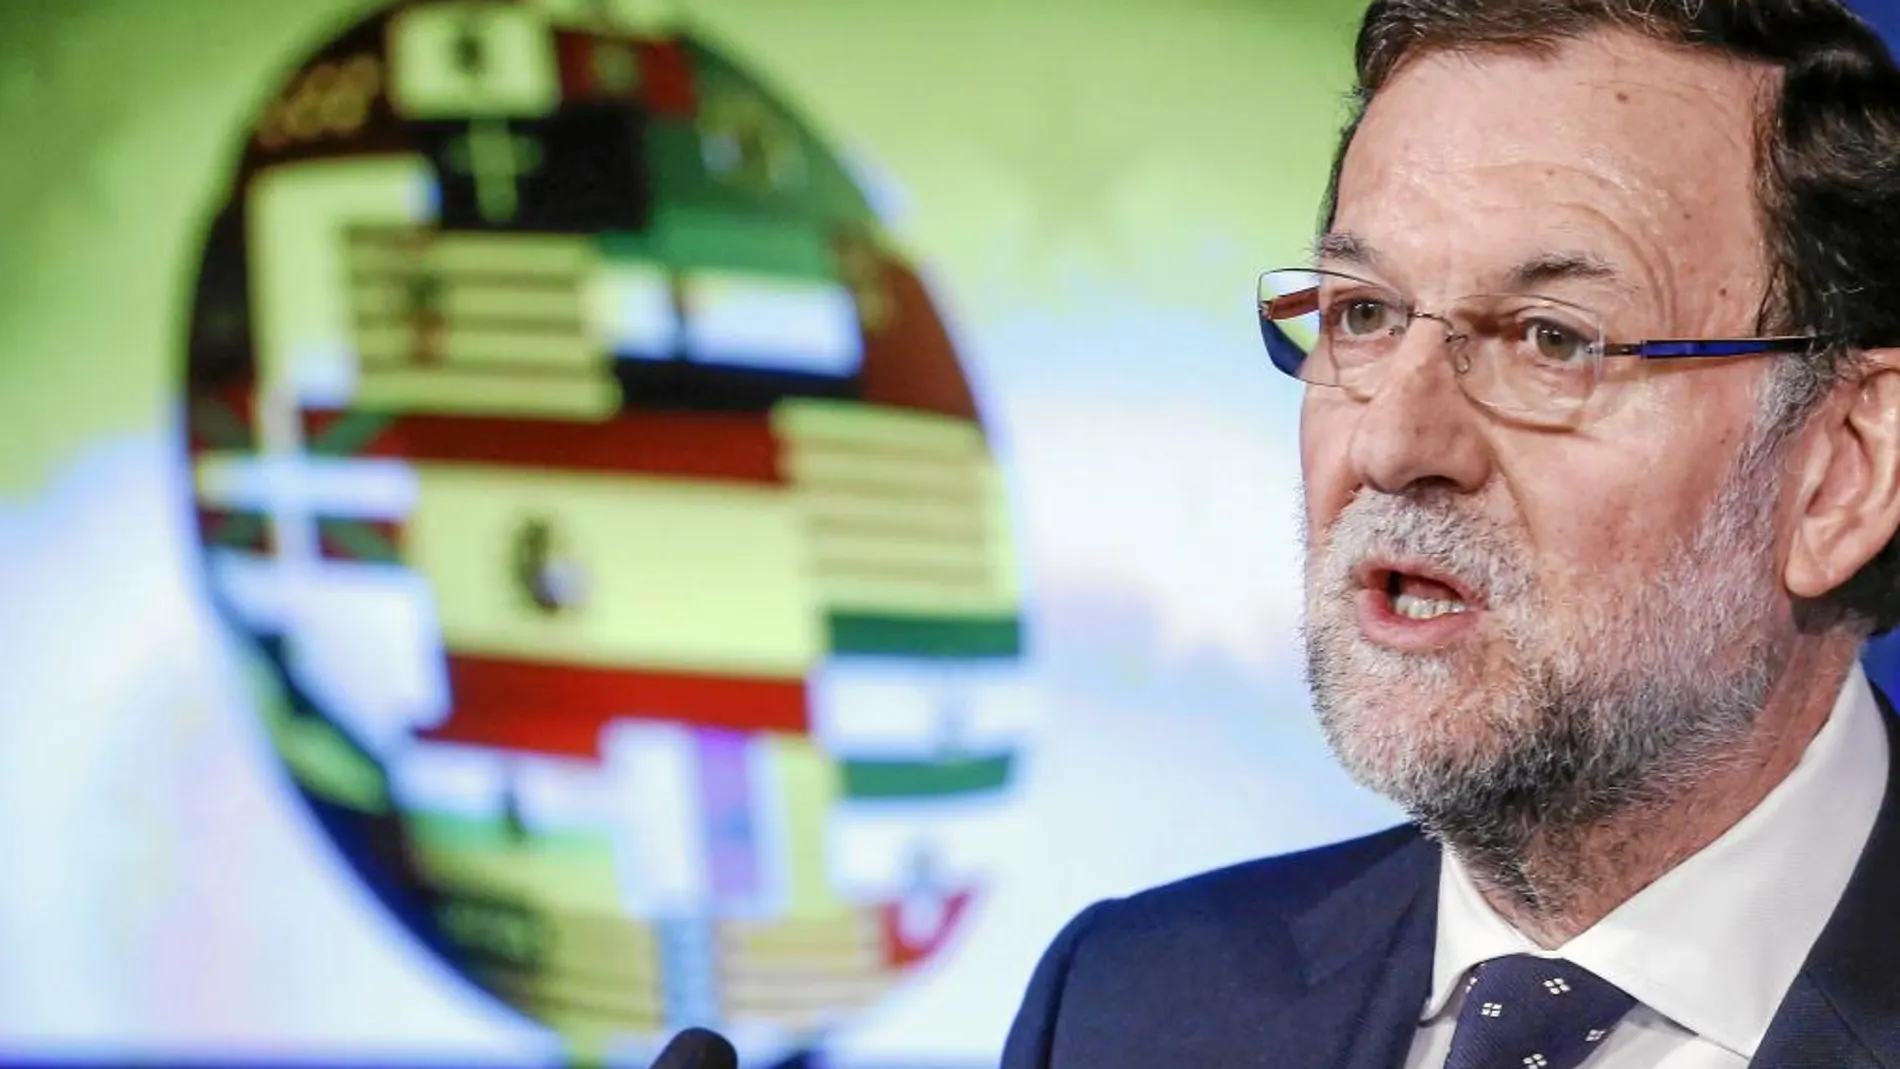 El presidente del Gobierno, Mariano Rajoy, ayer en Bruselas durante su intervención tras la Cumbre europea